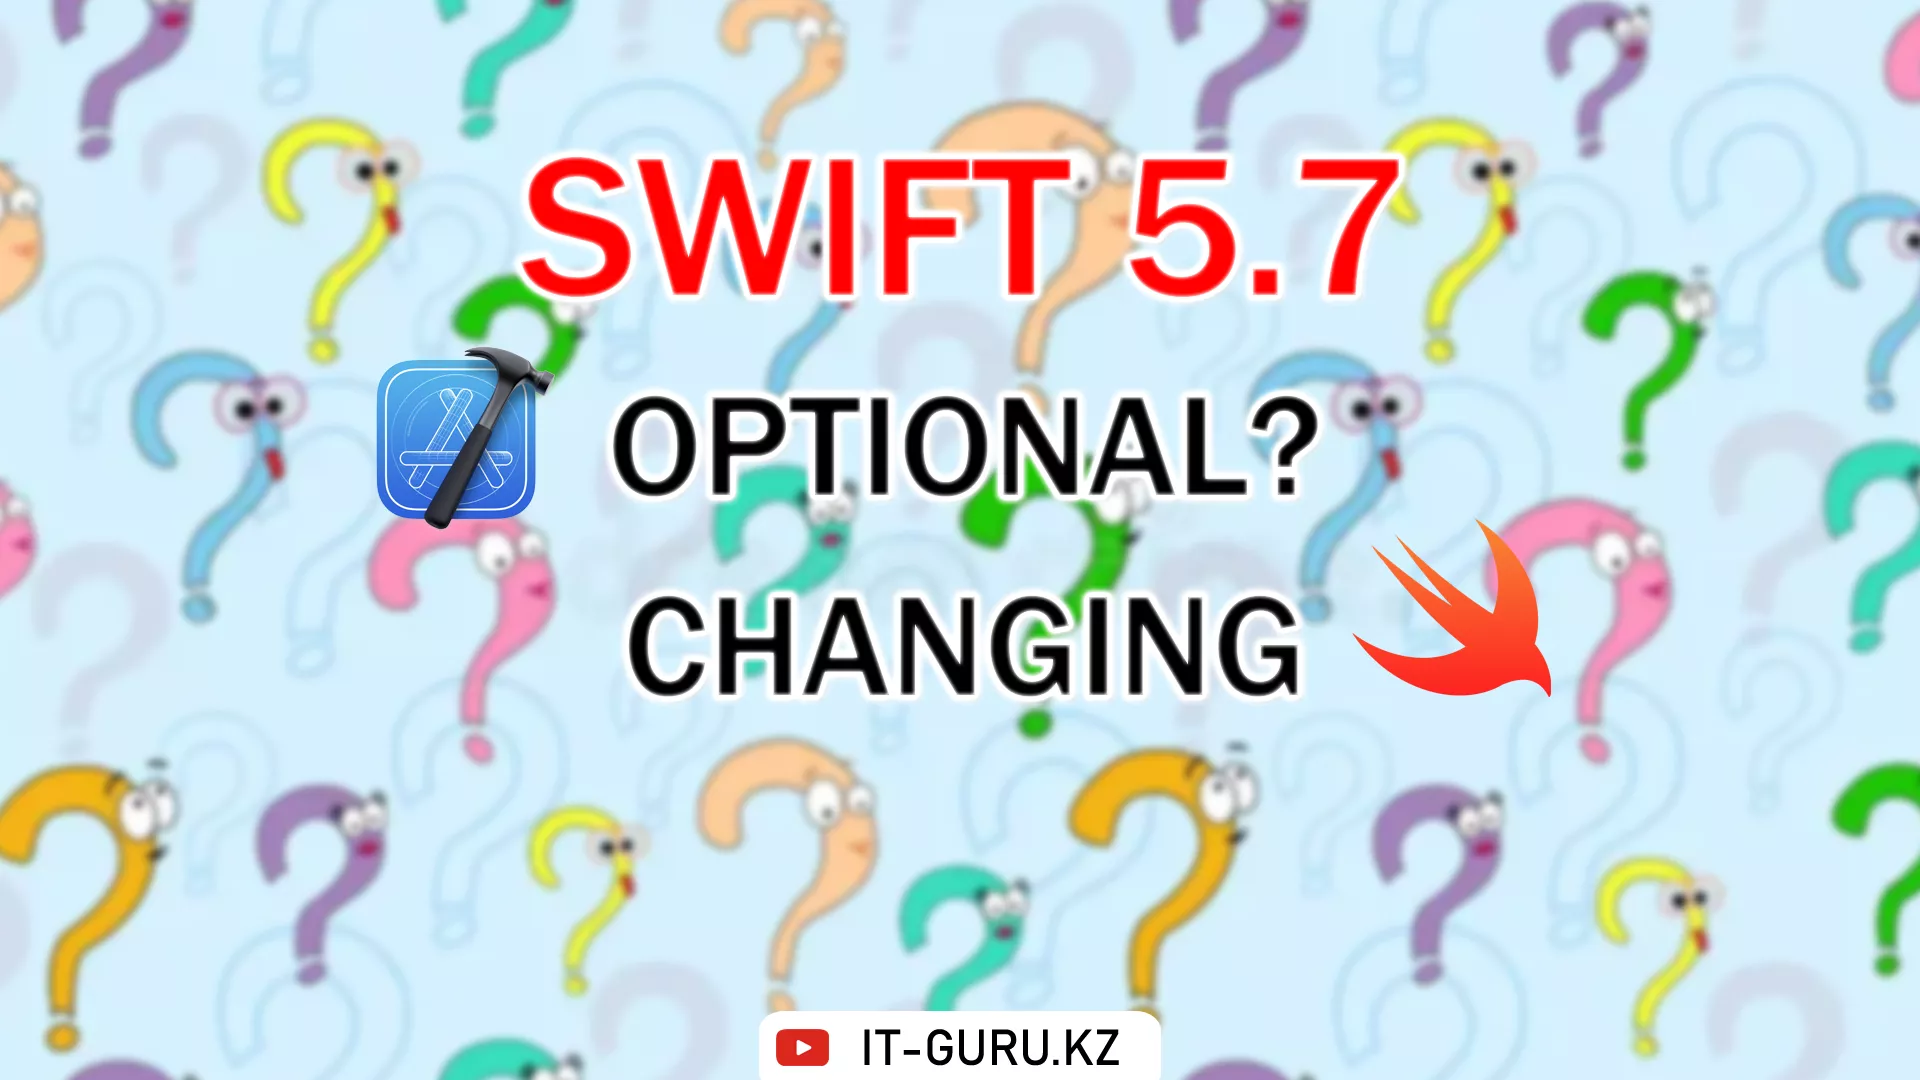 Сокращенная запись опциональной привязки (Optional Chaining) - Swift